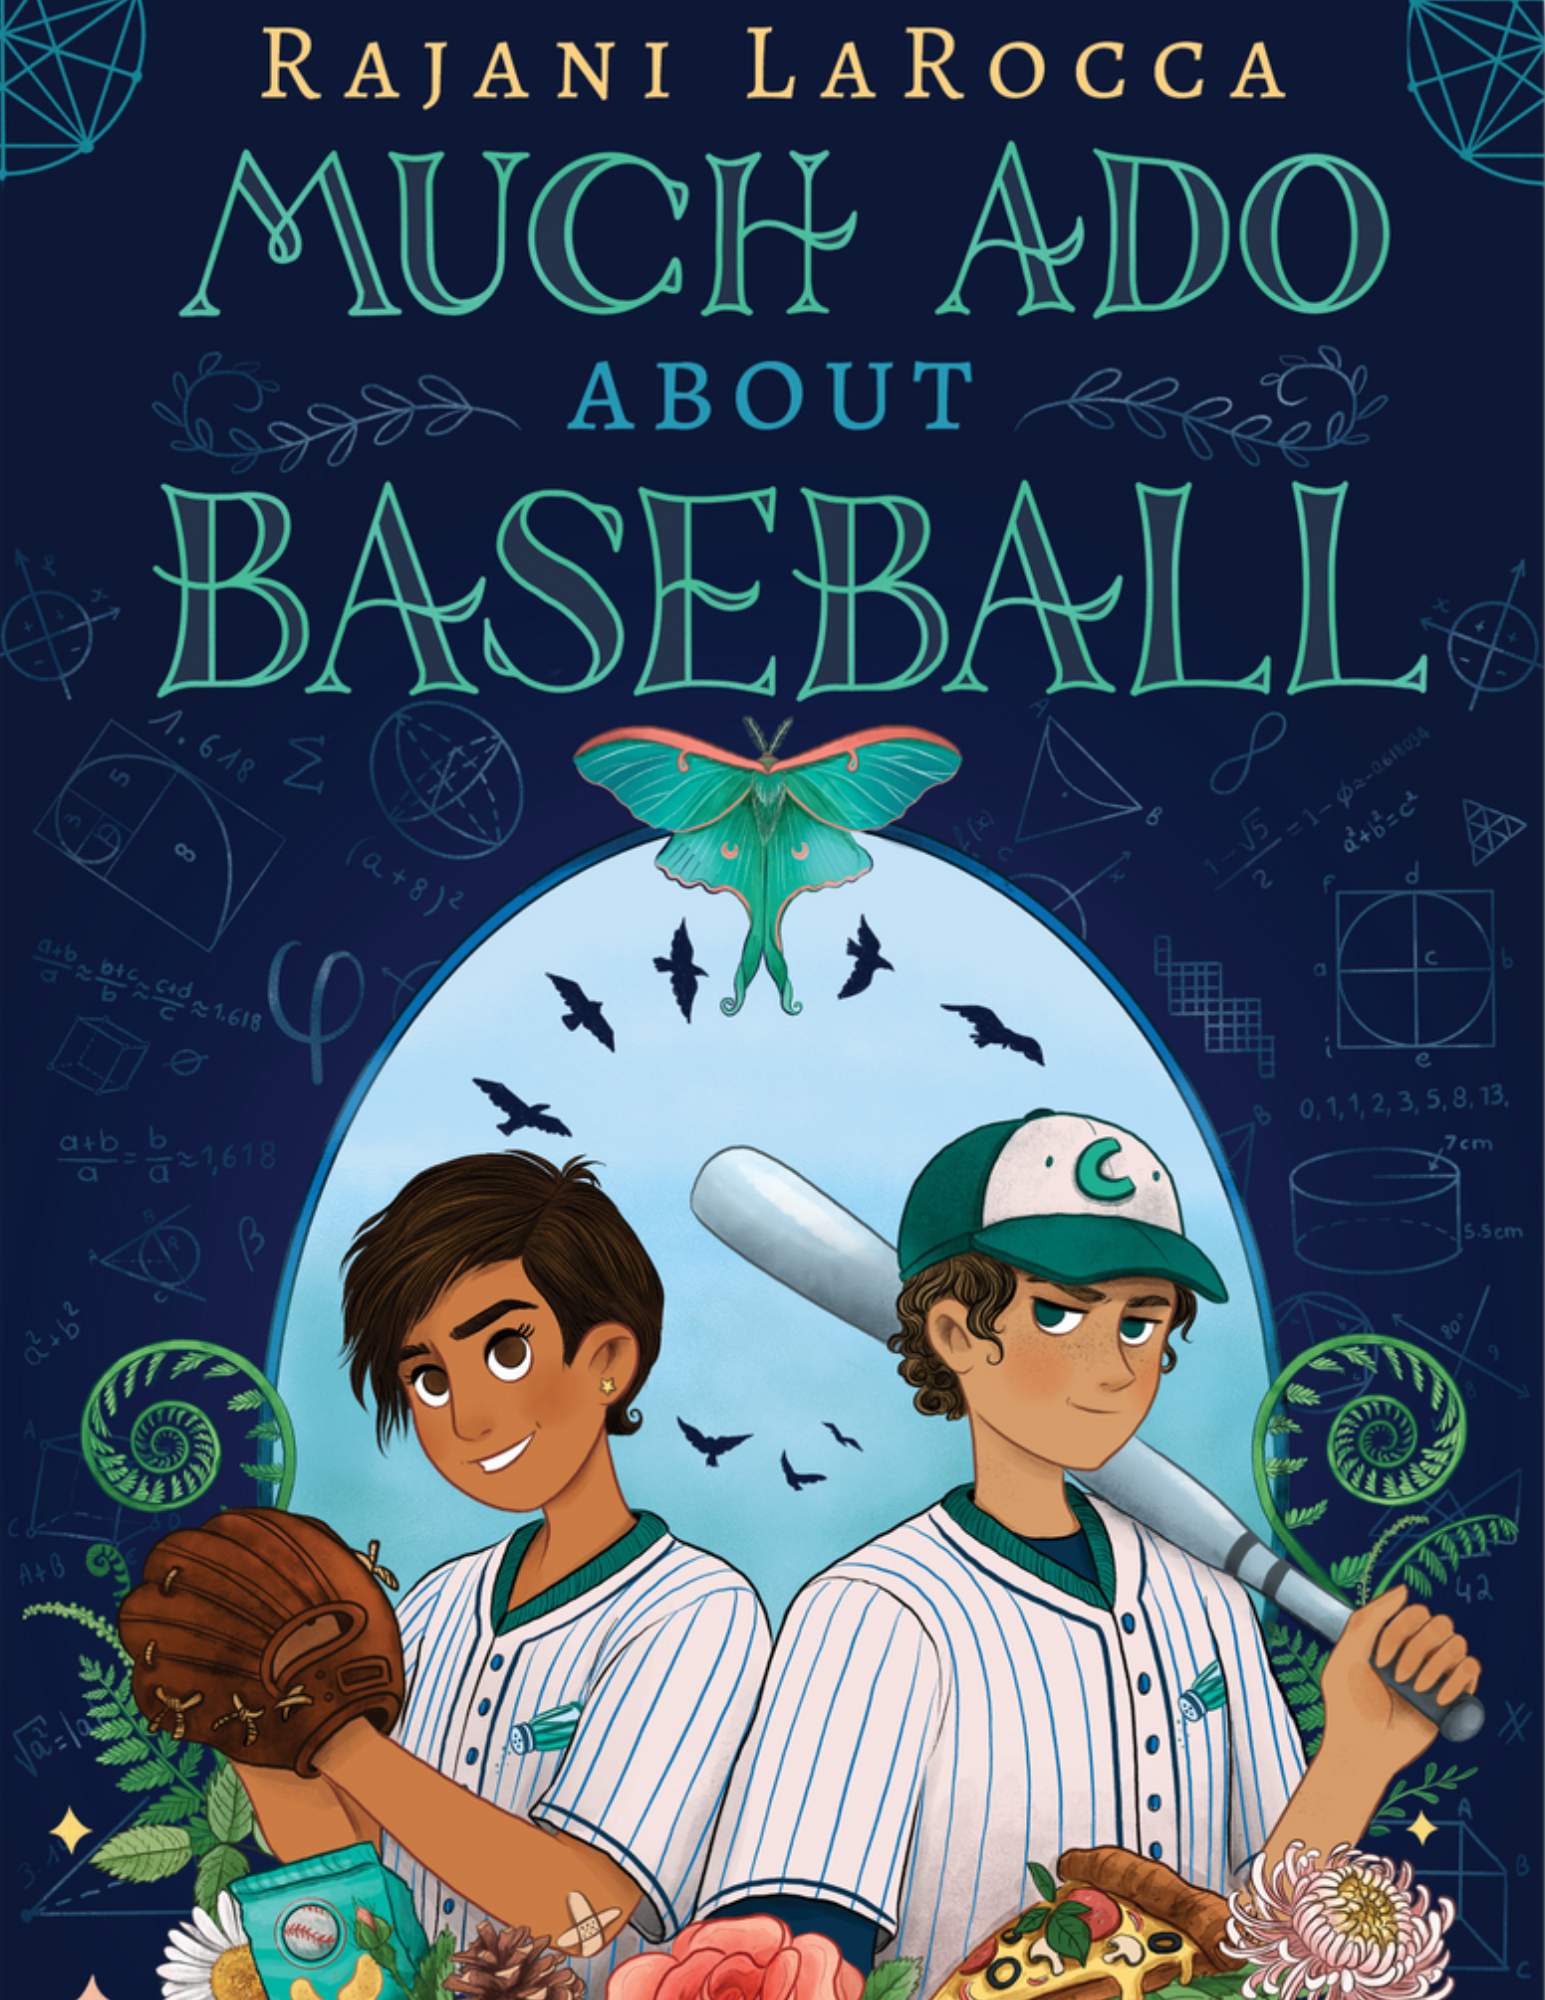 Much Ado About Baseball by Rajani LaRocca